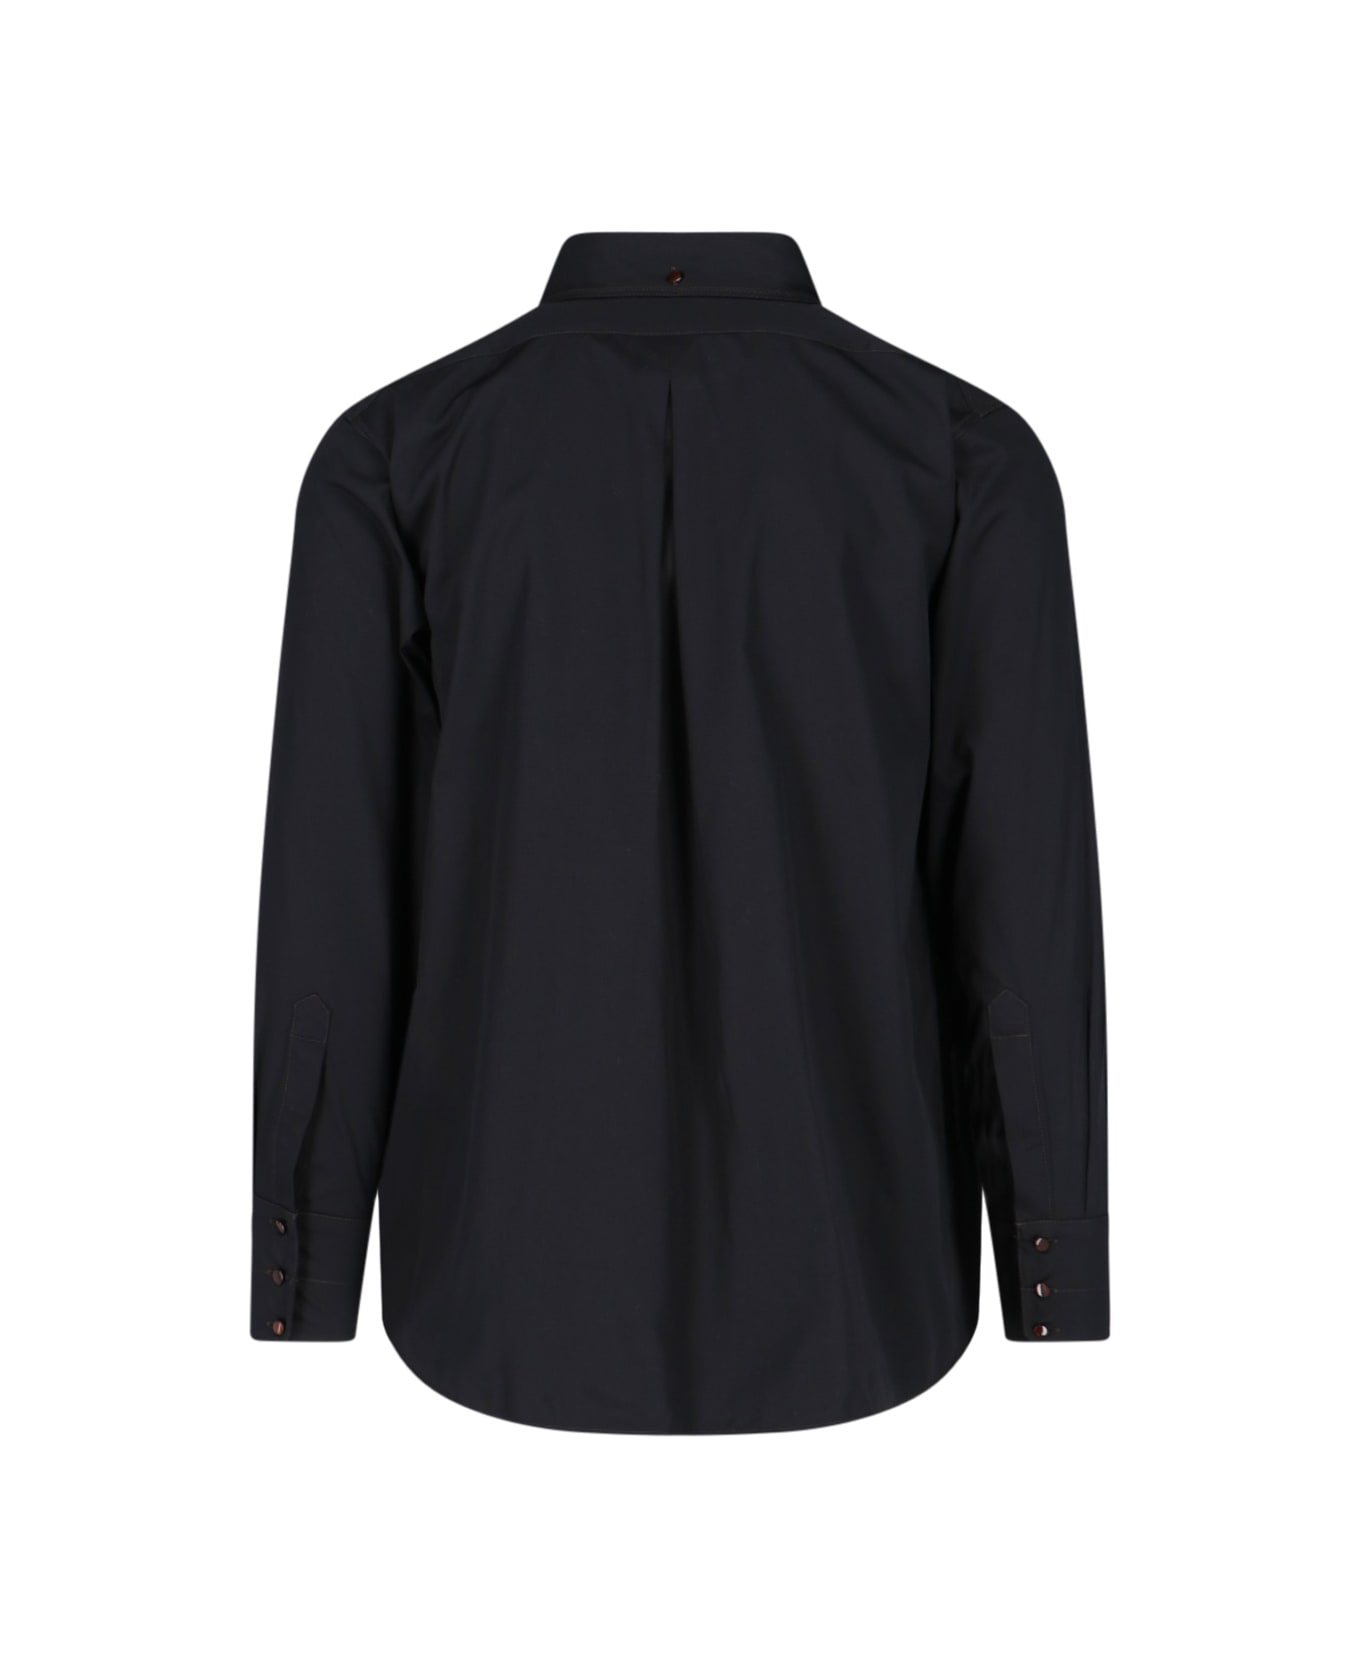 Lemaire Shirt - Black